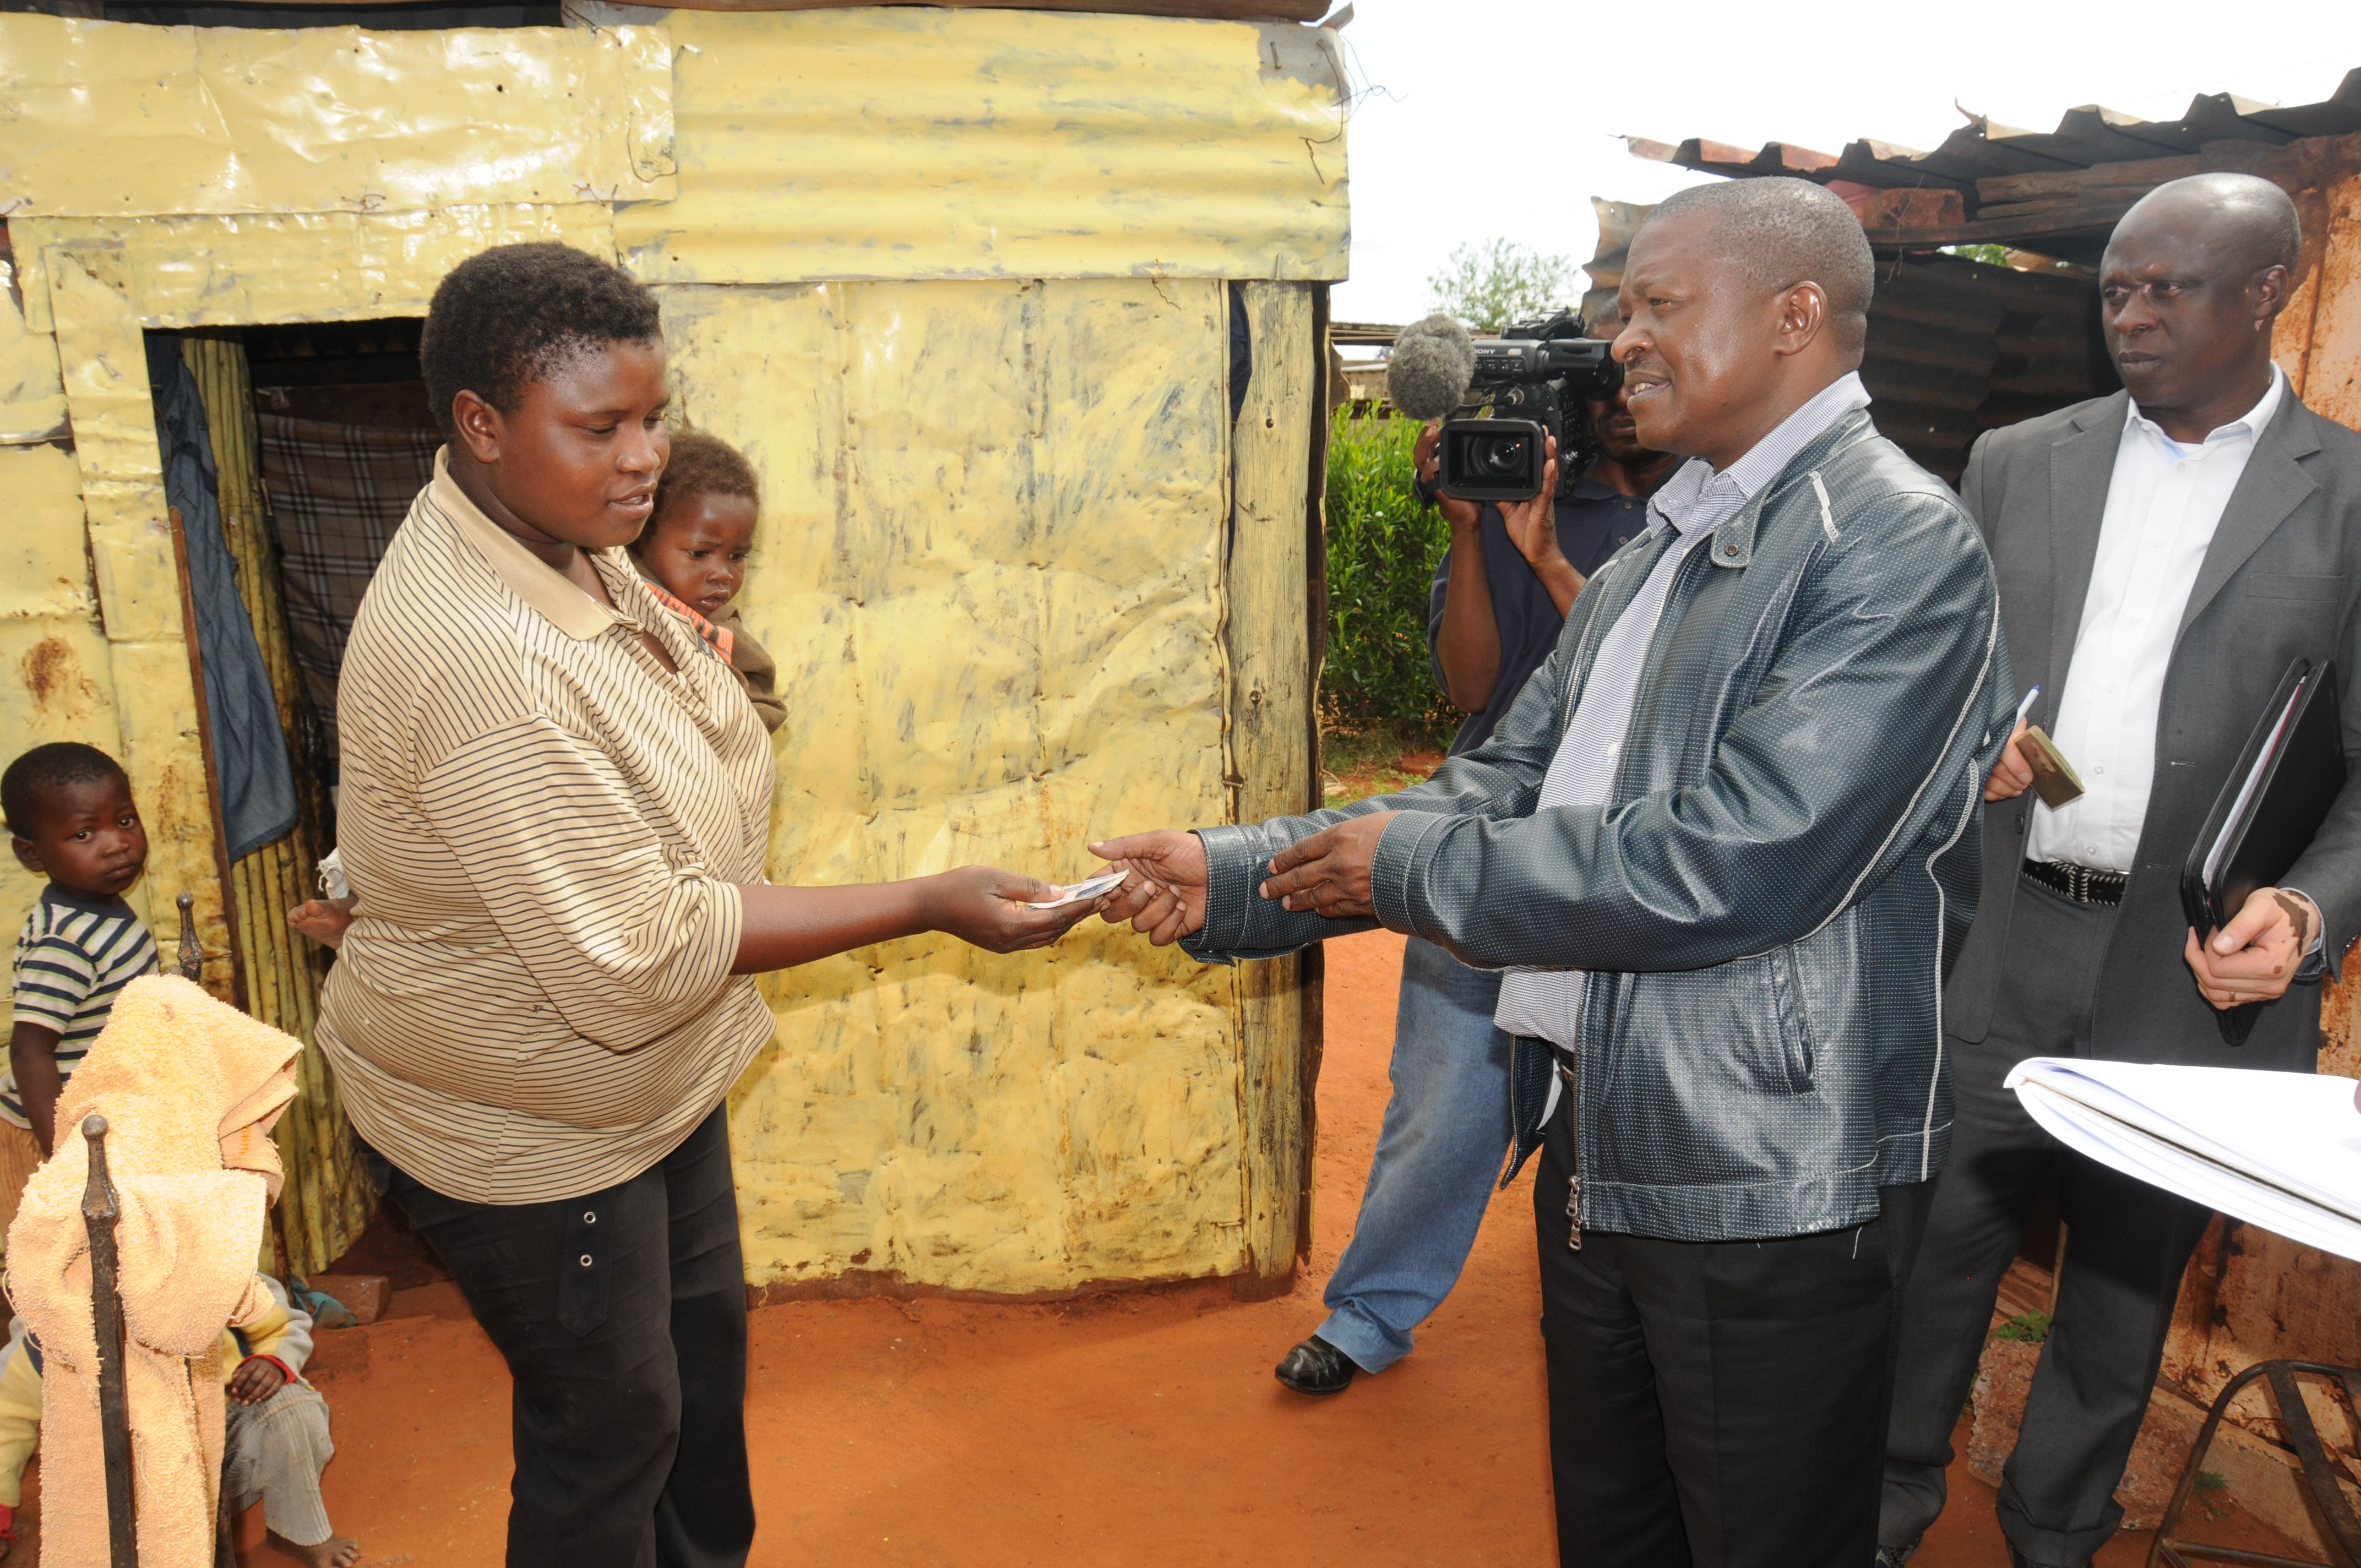 Mpumalanga Premier David Mabuza gives R500 to Ms Annah Marakalala to buy some food